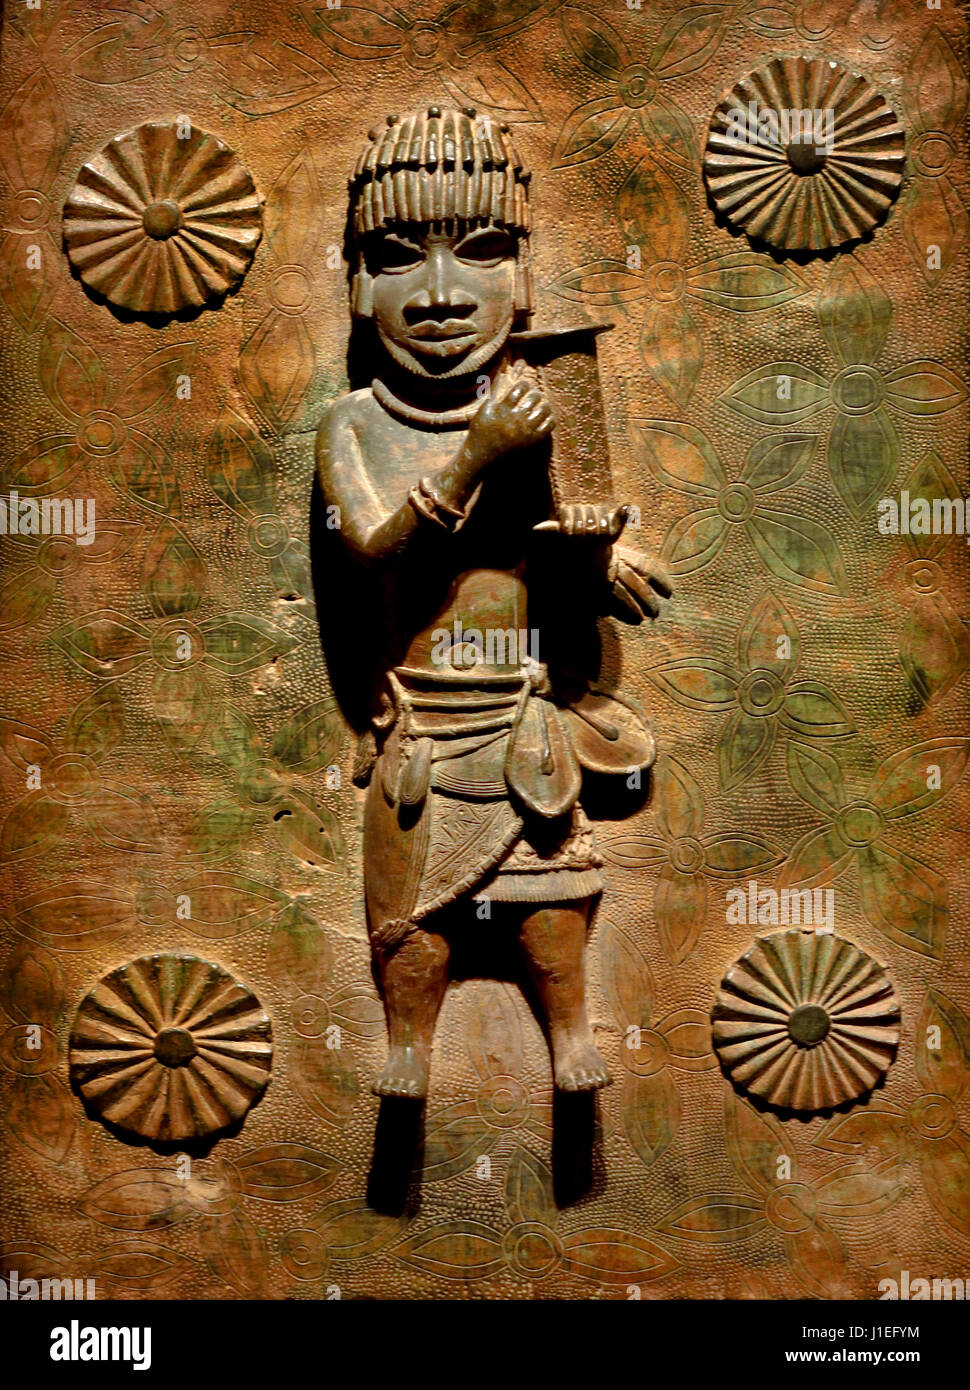 Courtier avec ekpokin contenant pour la remise des cadeaux au roi16th - plaque en laiton, bronze du 17ème siècle montrant l'Abo du Bénin avec un accompagnateur, peuples Edo 16ème siècle annonce à partir de l'Afrique de l'Afrique Bénin, Nigéria Banque D'Images